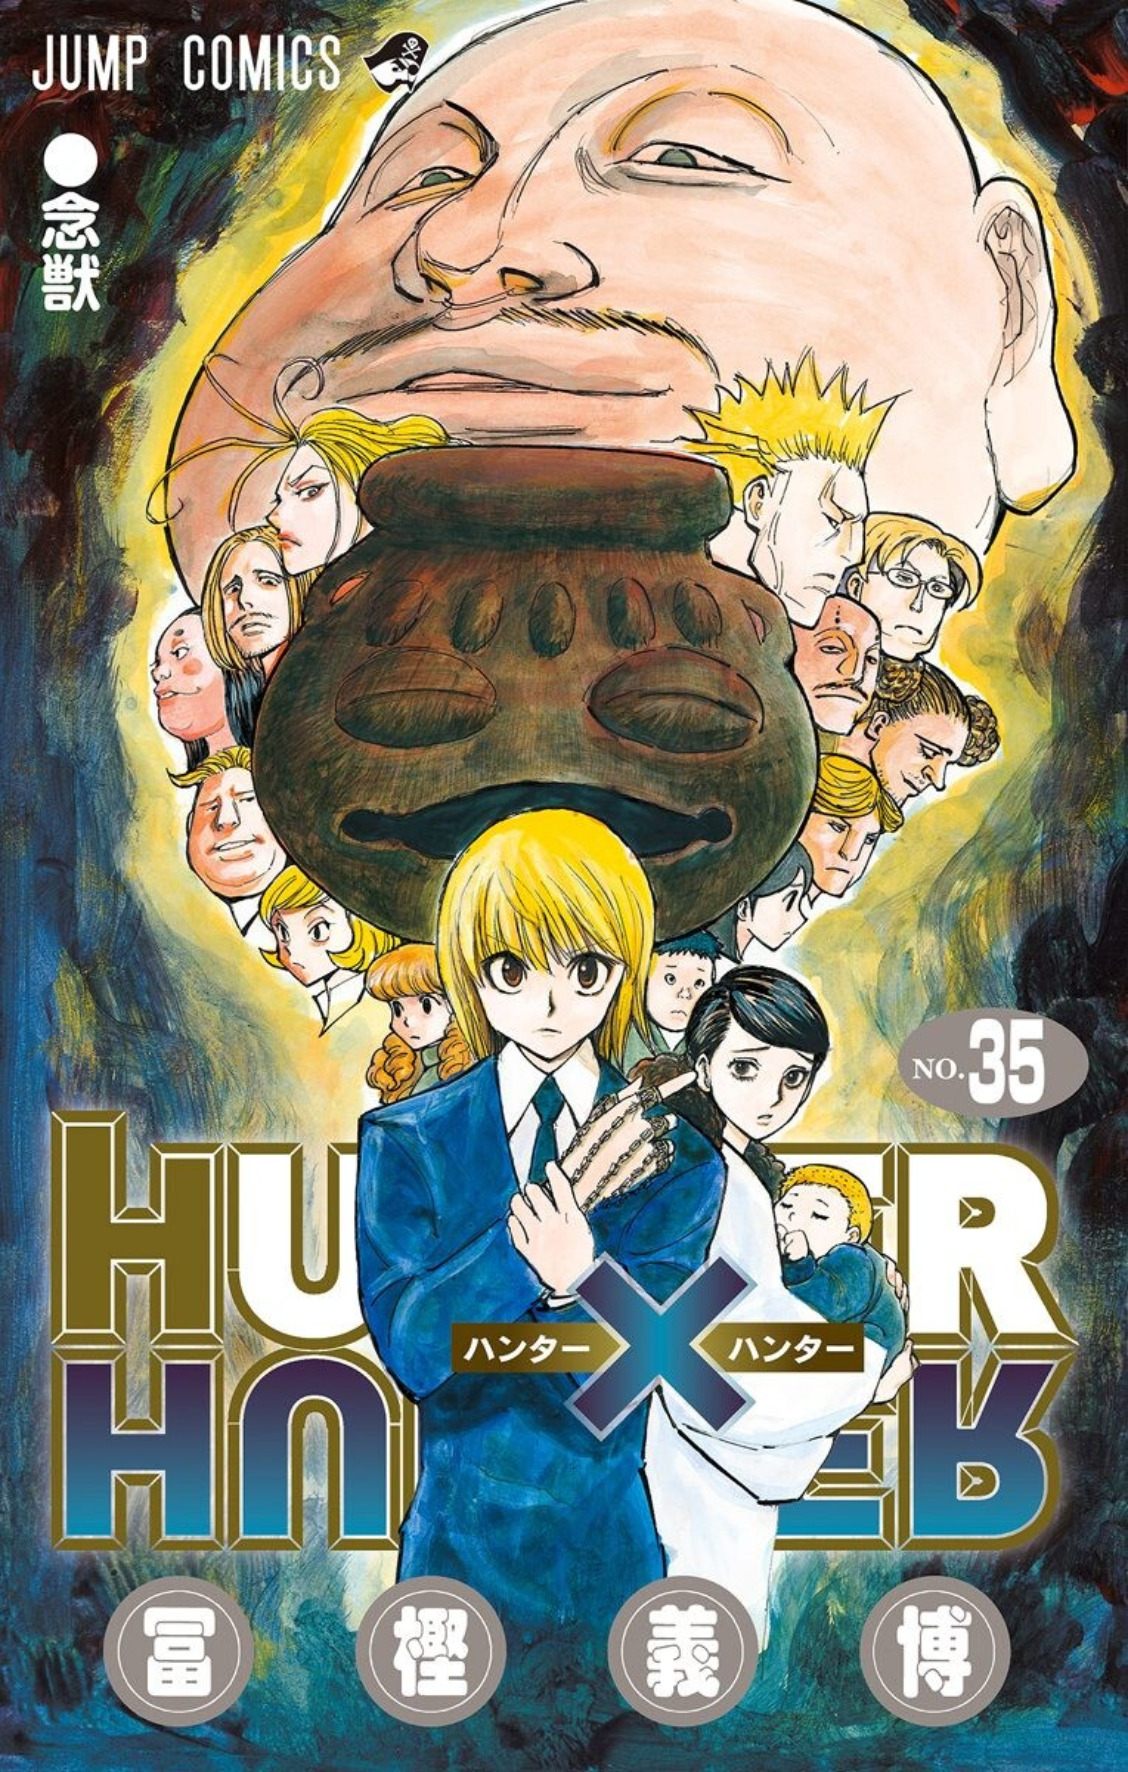 Hunter X Hunter, Chapter 393 - Hunter X Hunter Manga Online